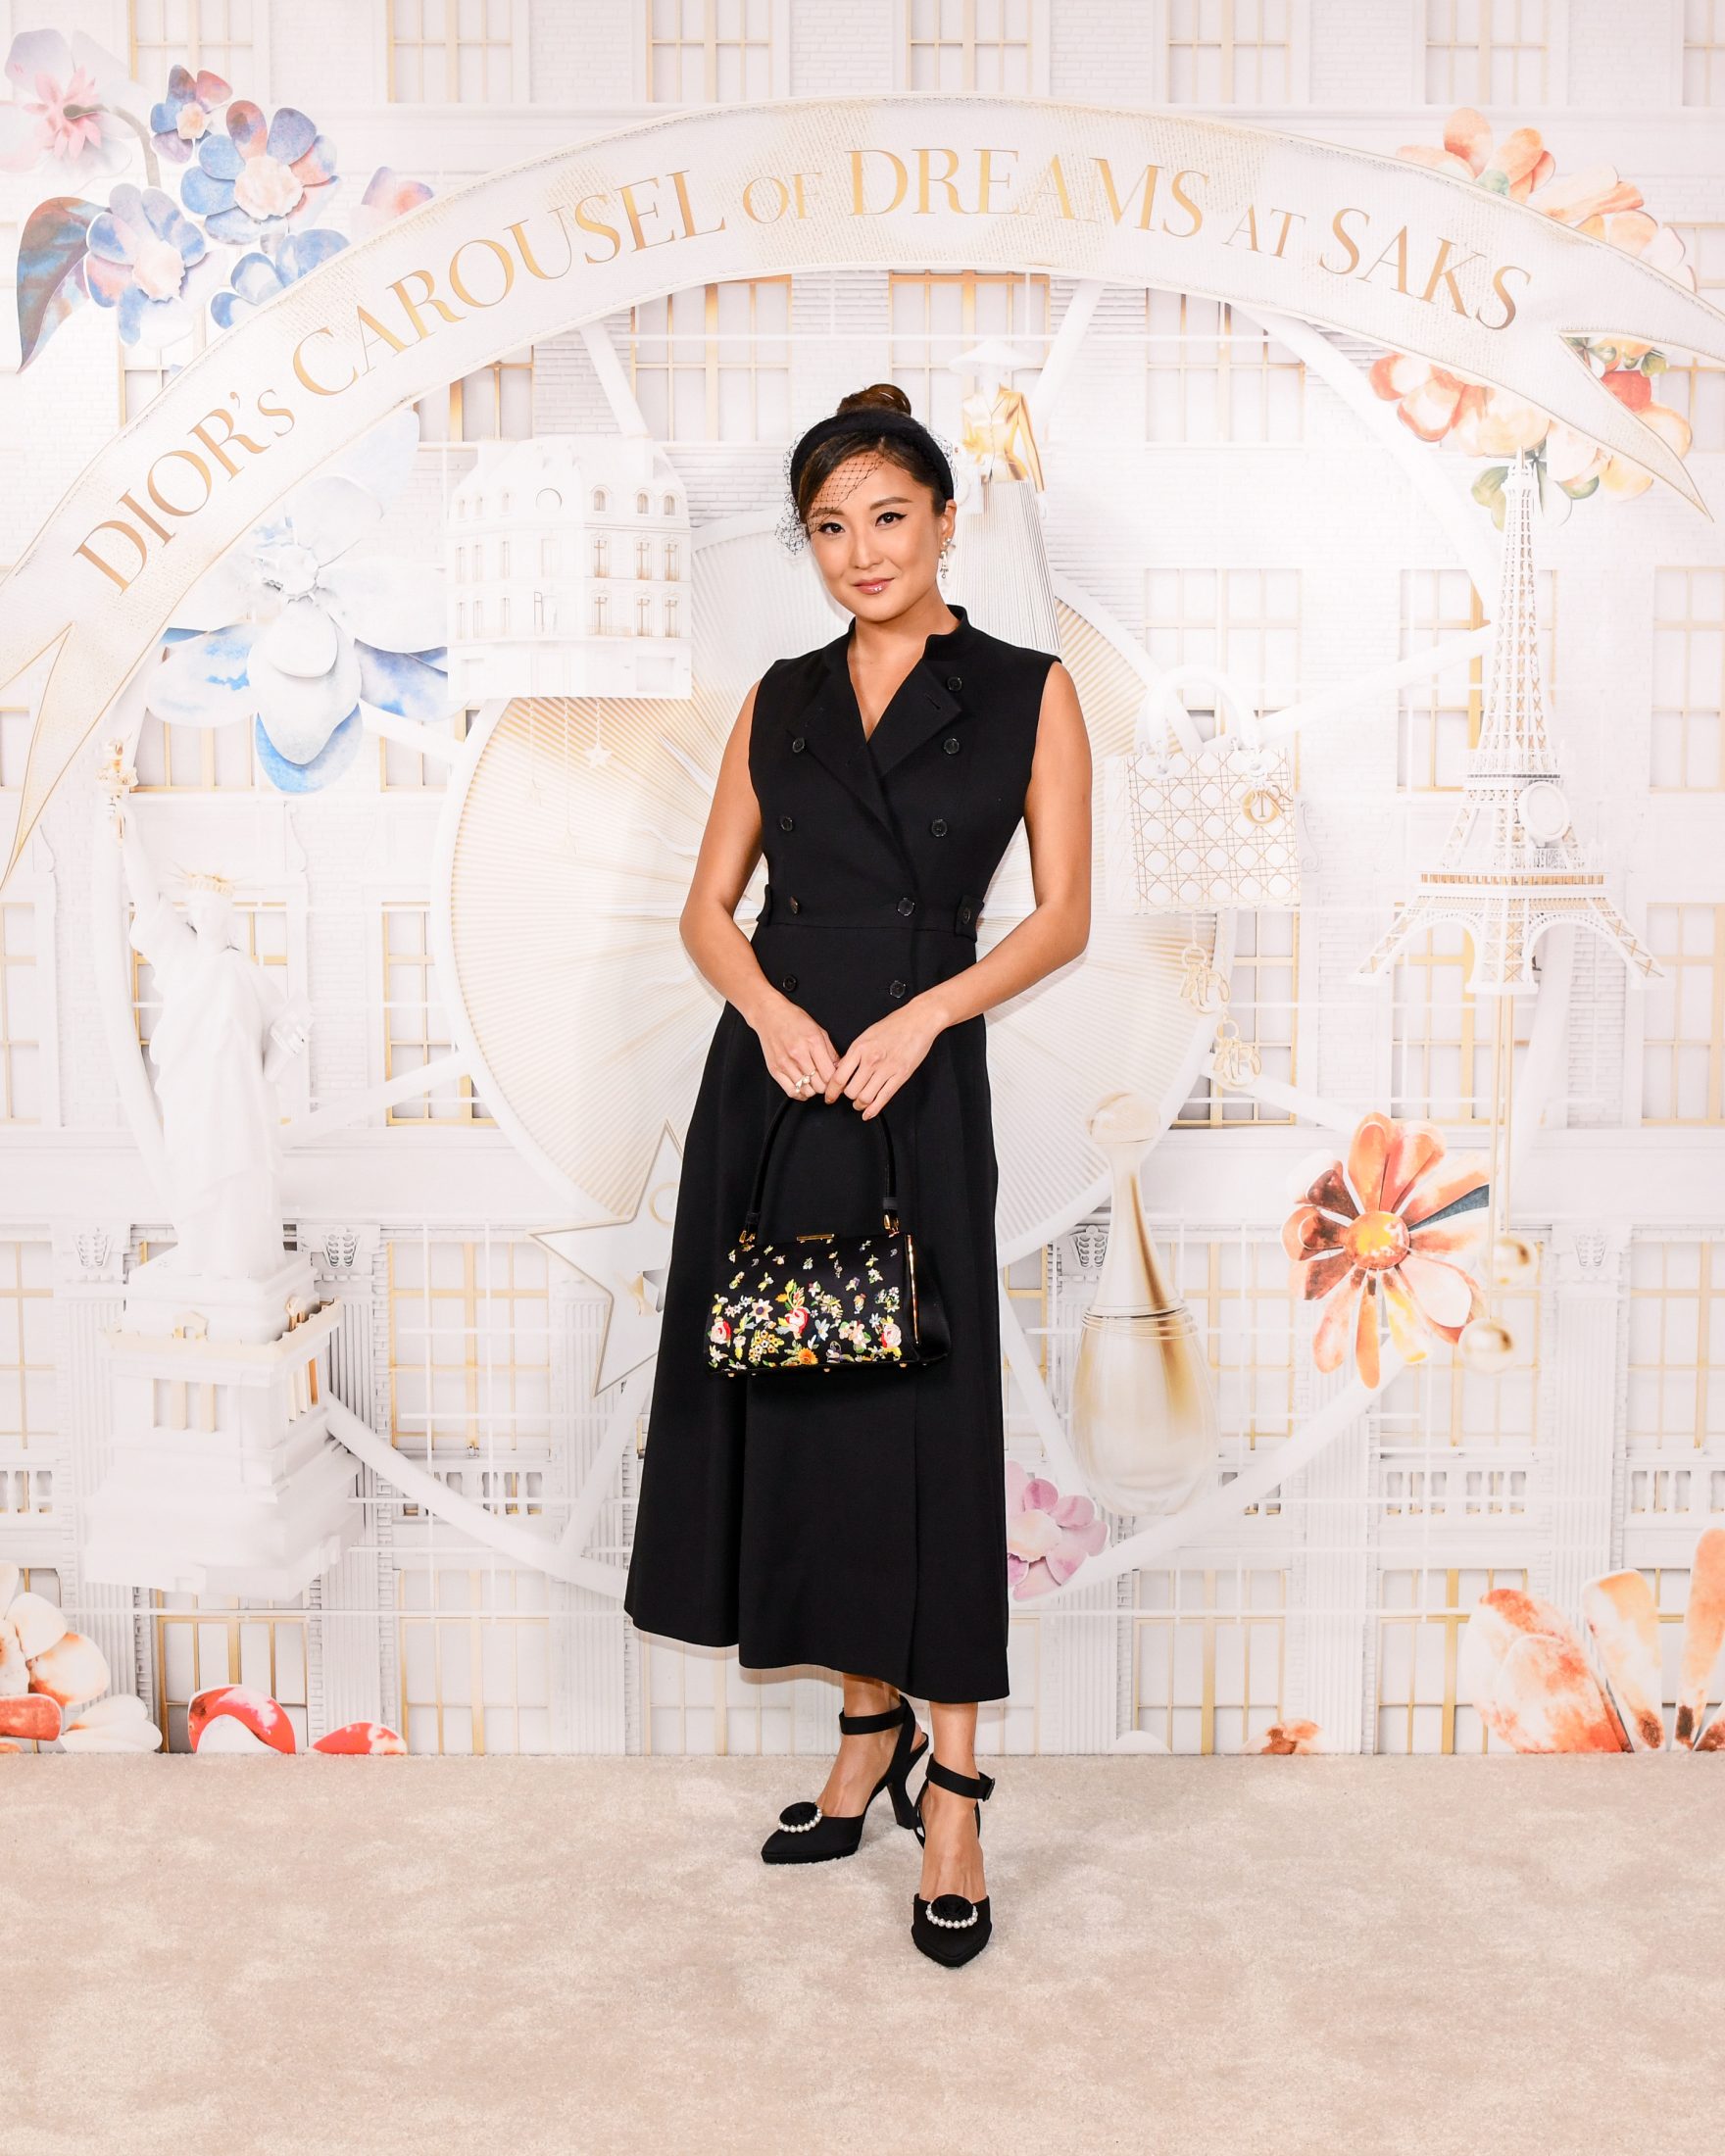 Карусель грез: Dior украсили к Новому году знаменитый универмаг в Нью-Йорке